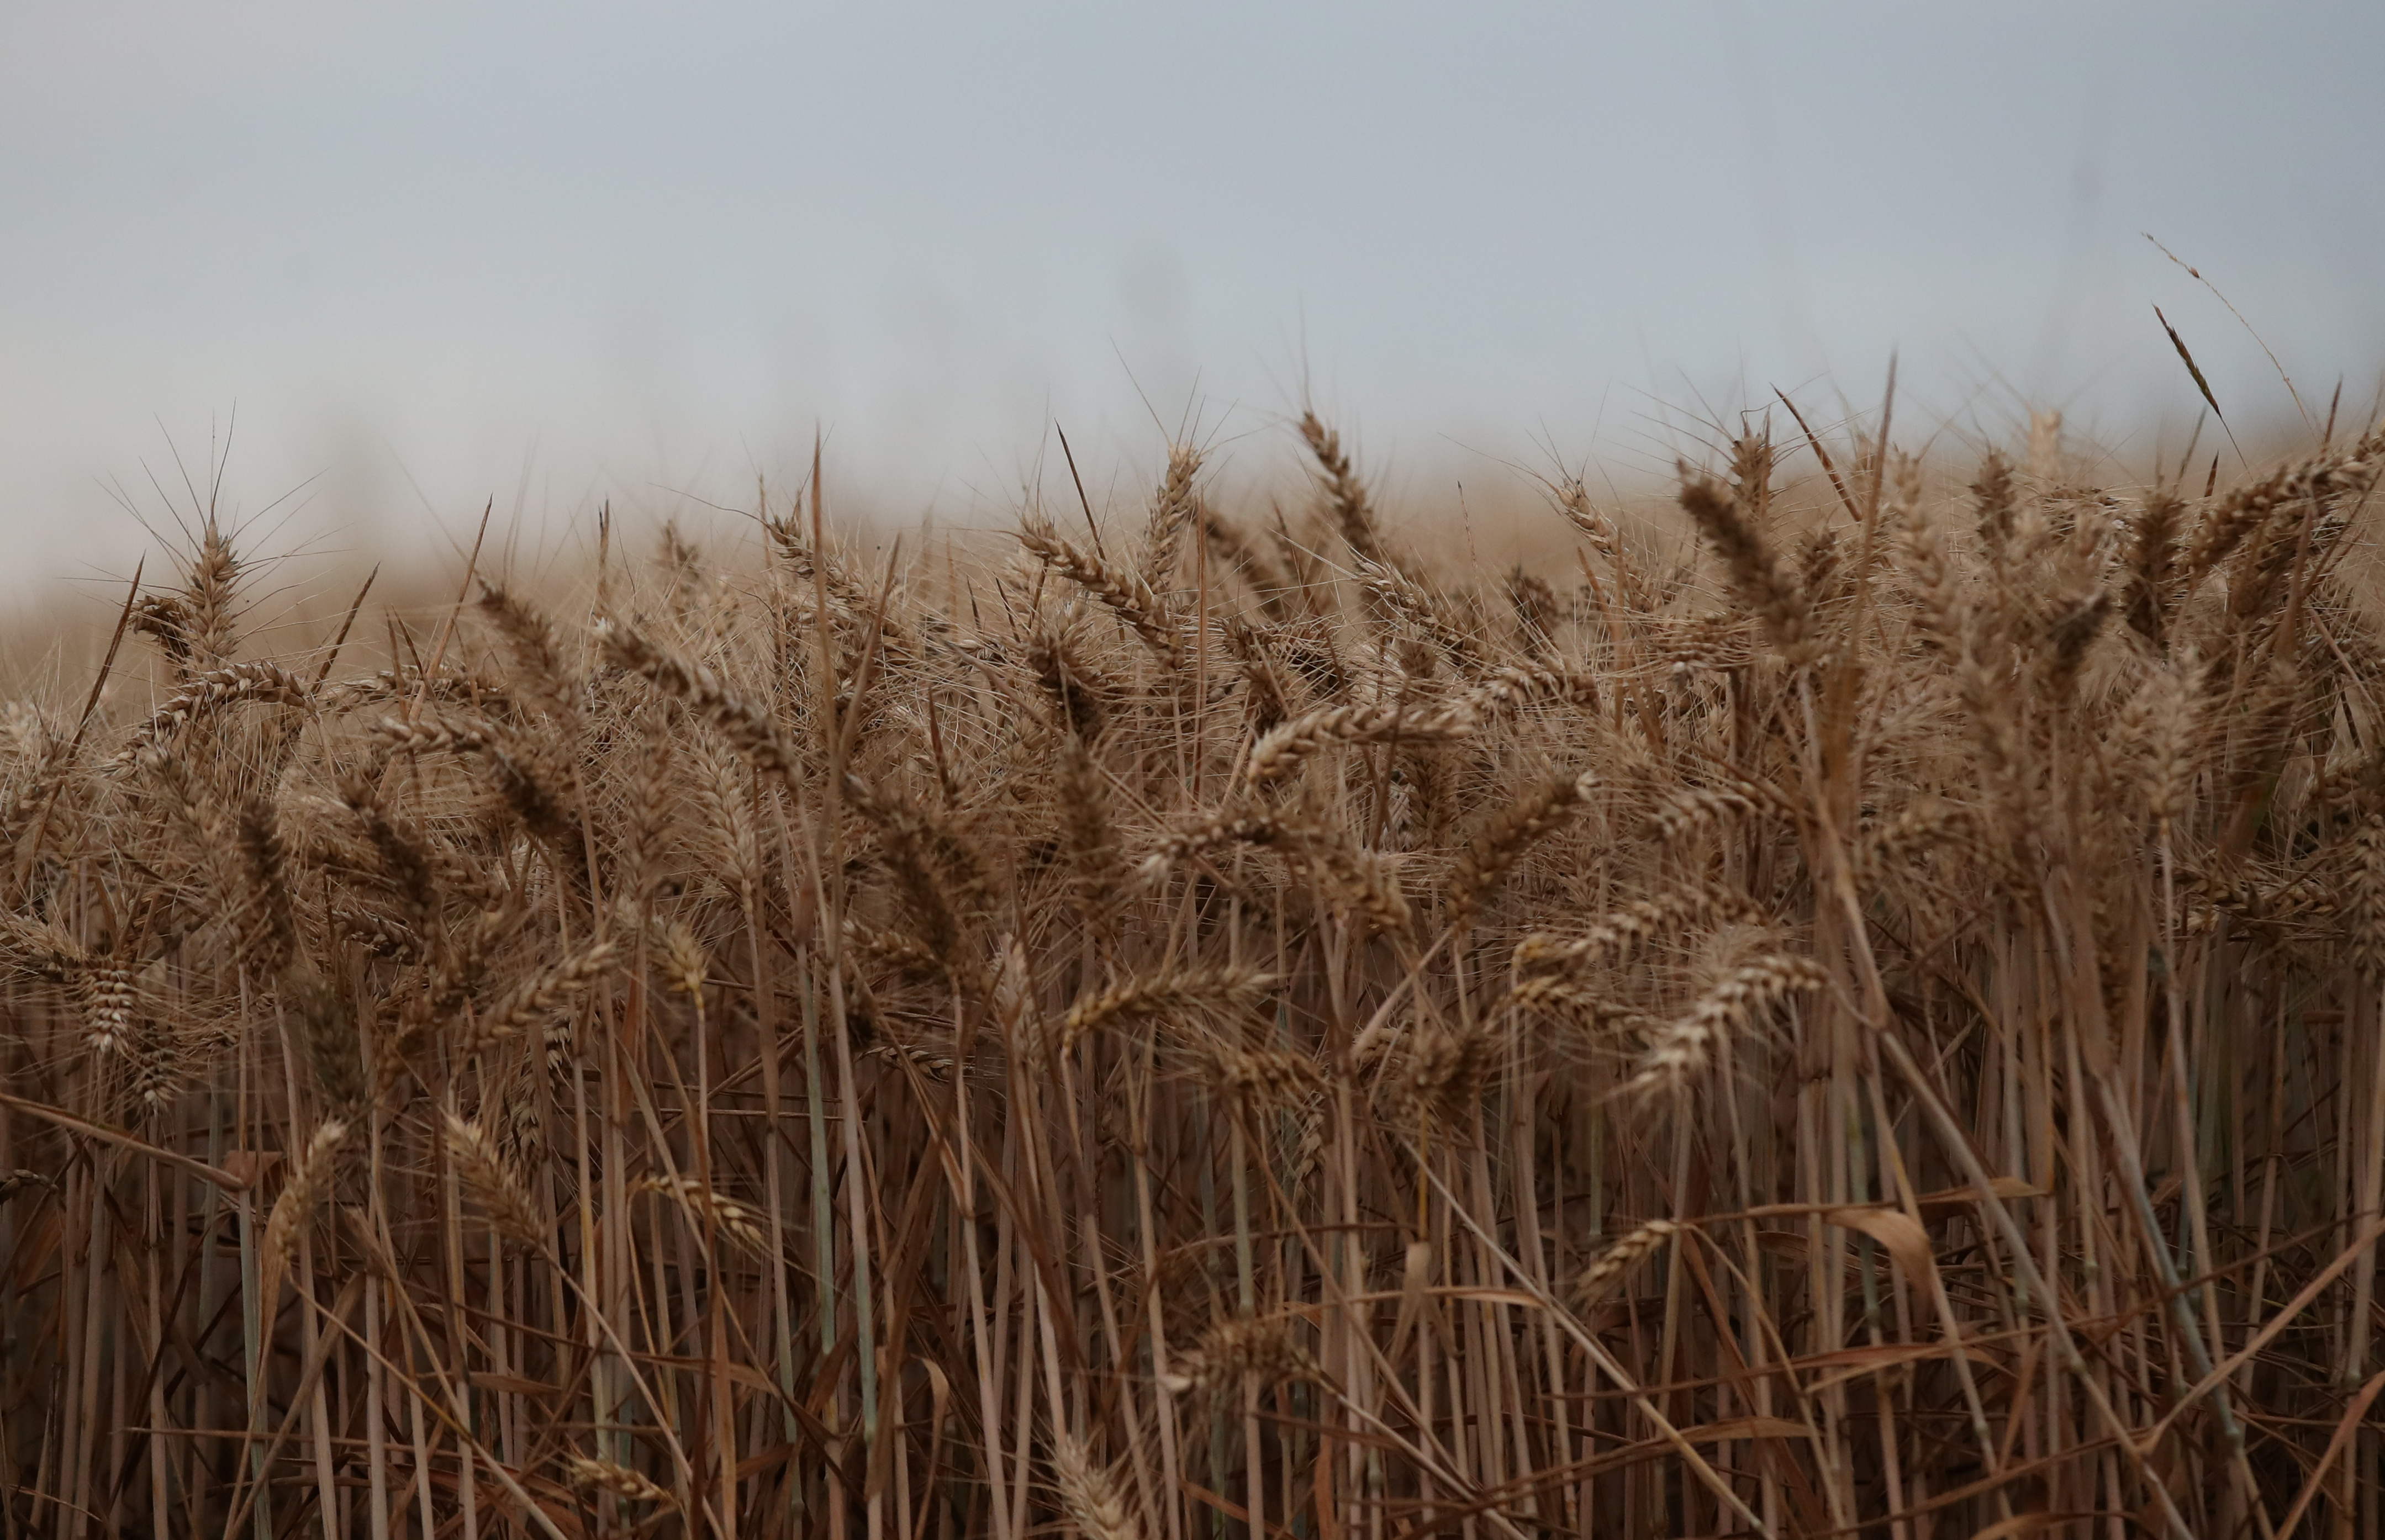 Winter wheat ready for harvest is seen in a field near Kimpton